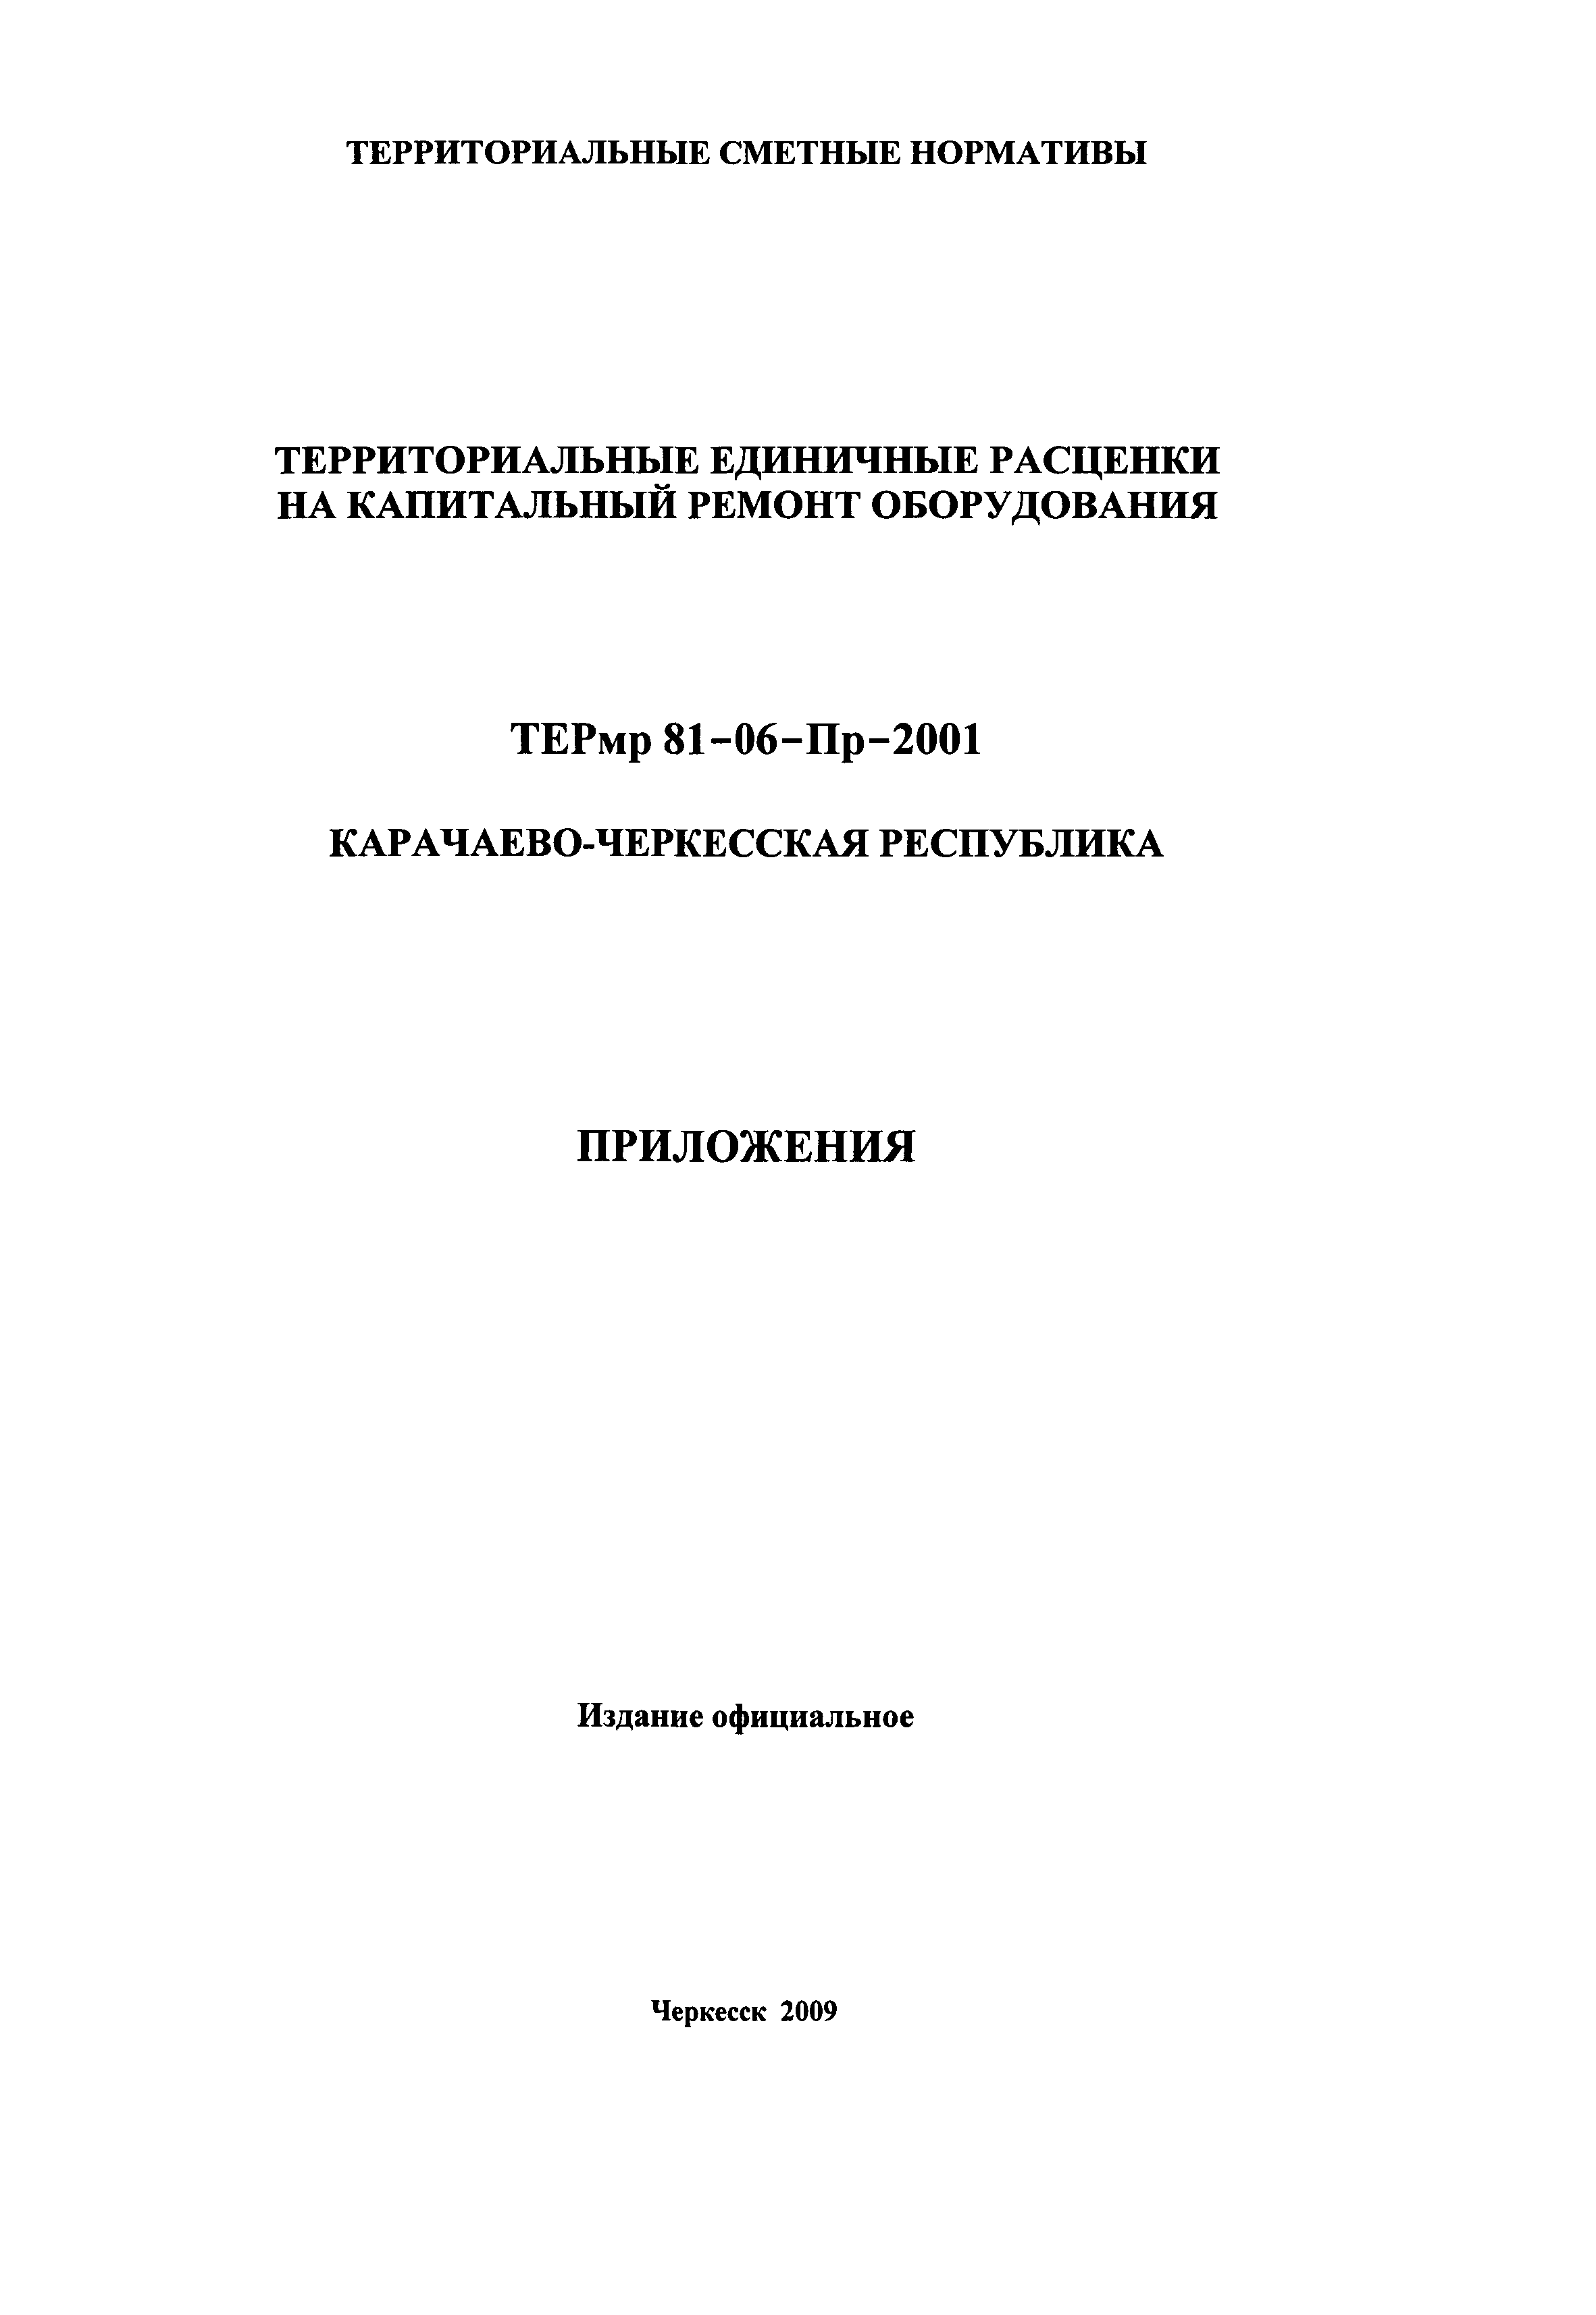 ТЕРмр Карачаево-Черкесская Республика 2001-Пр